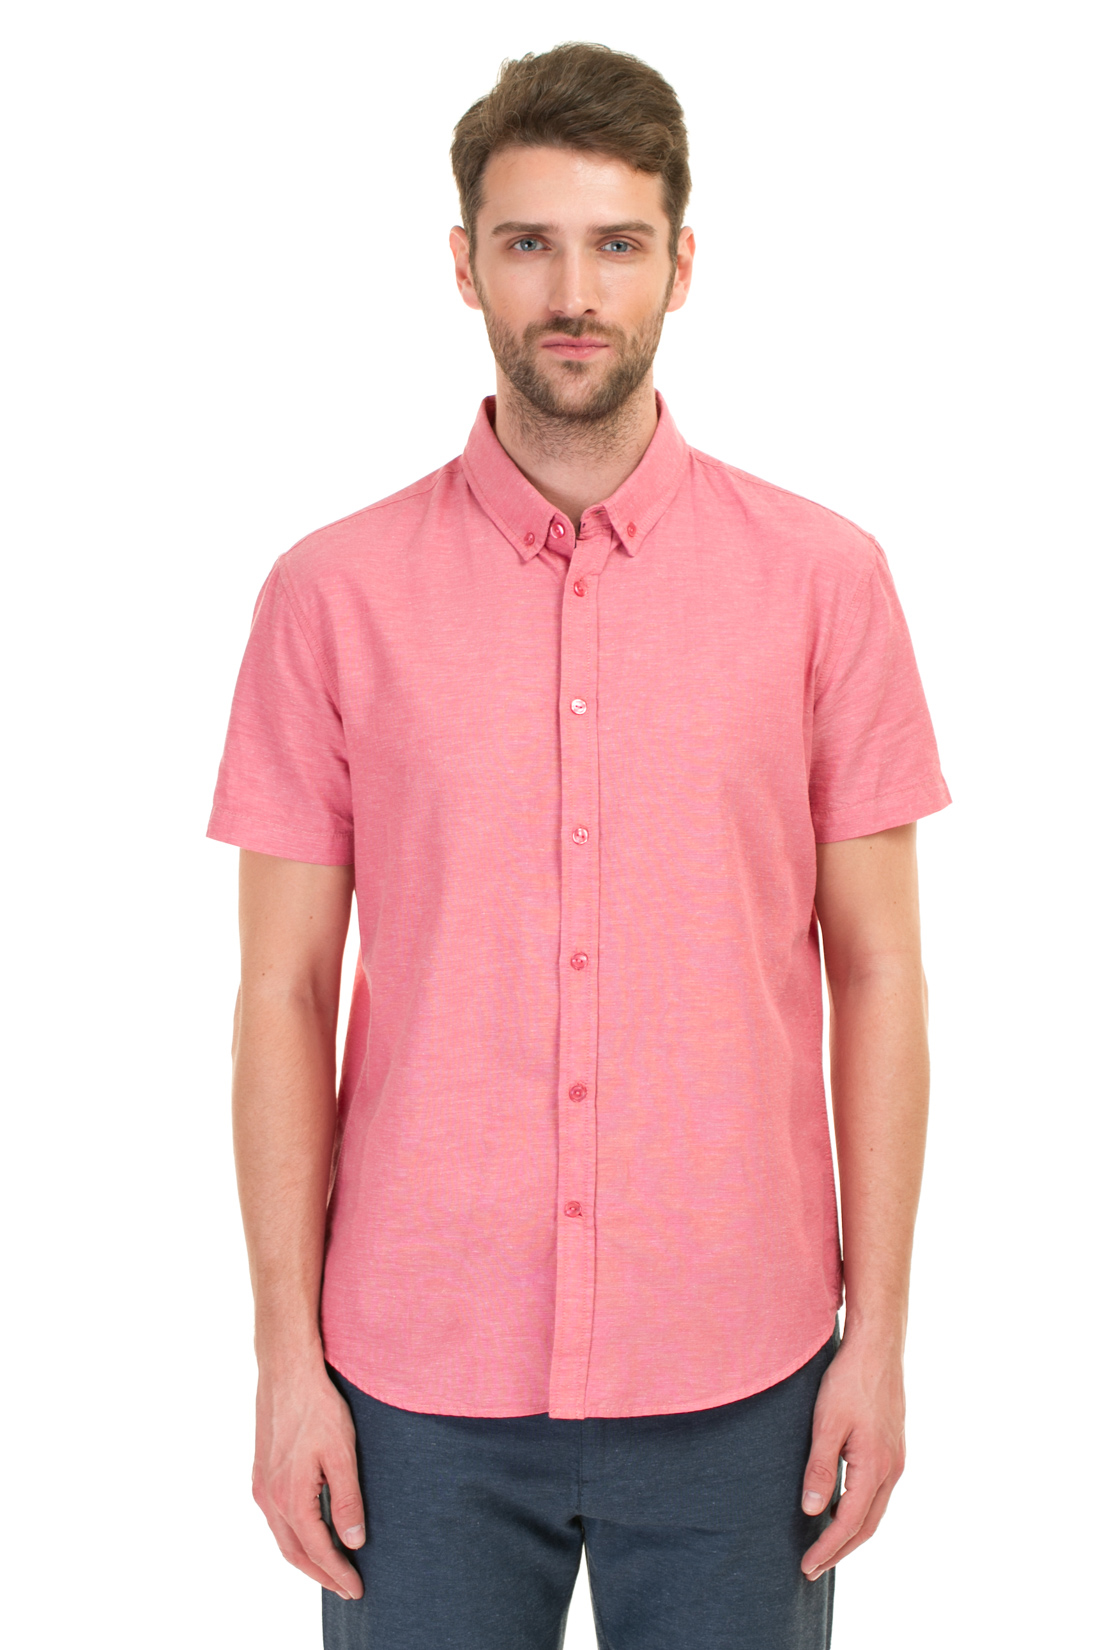 Рубашка из натурального материала (арт. baon B687016), размер 3XL, цвет розовый